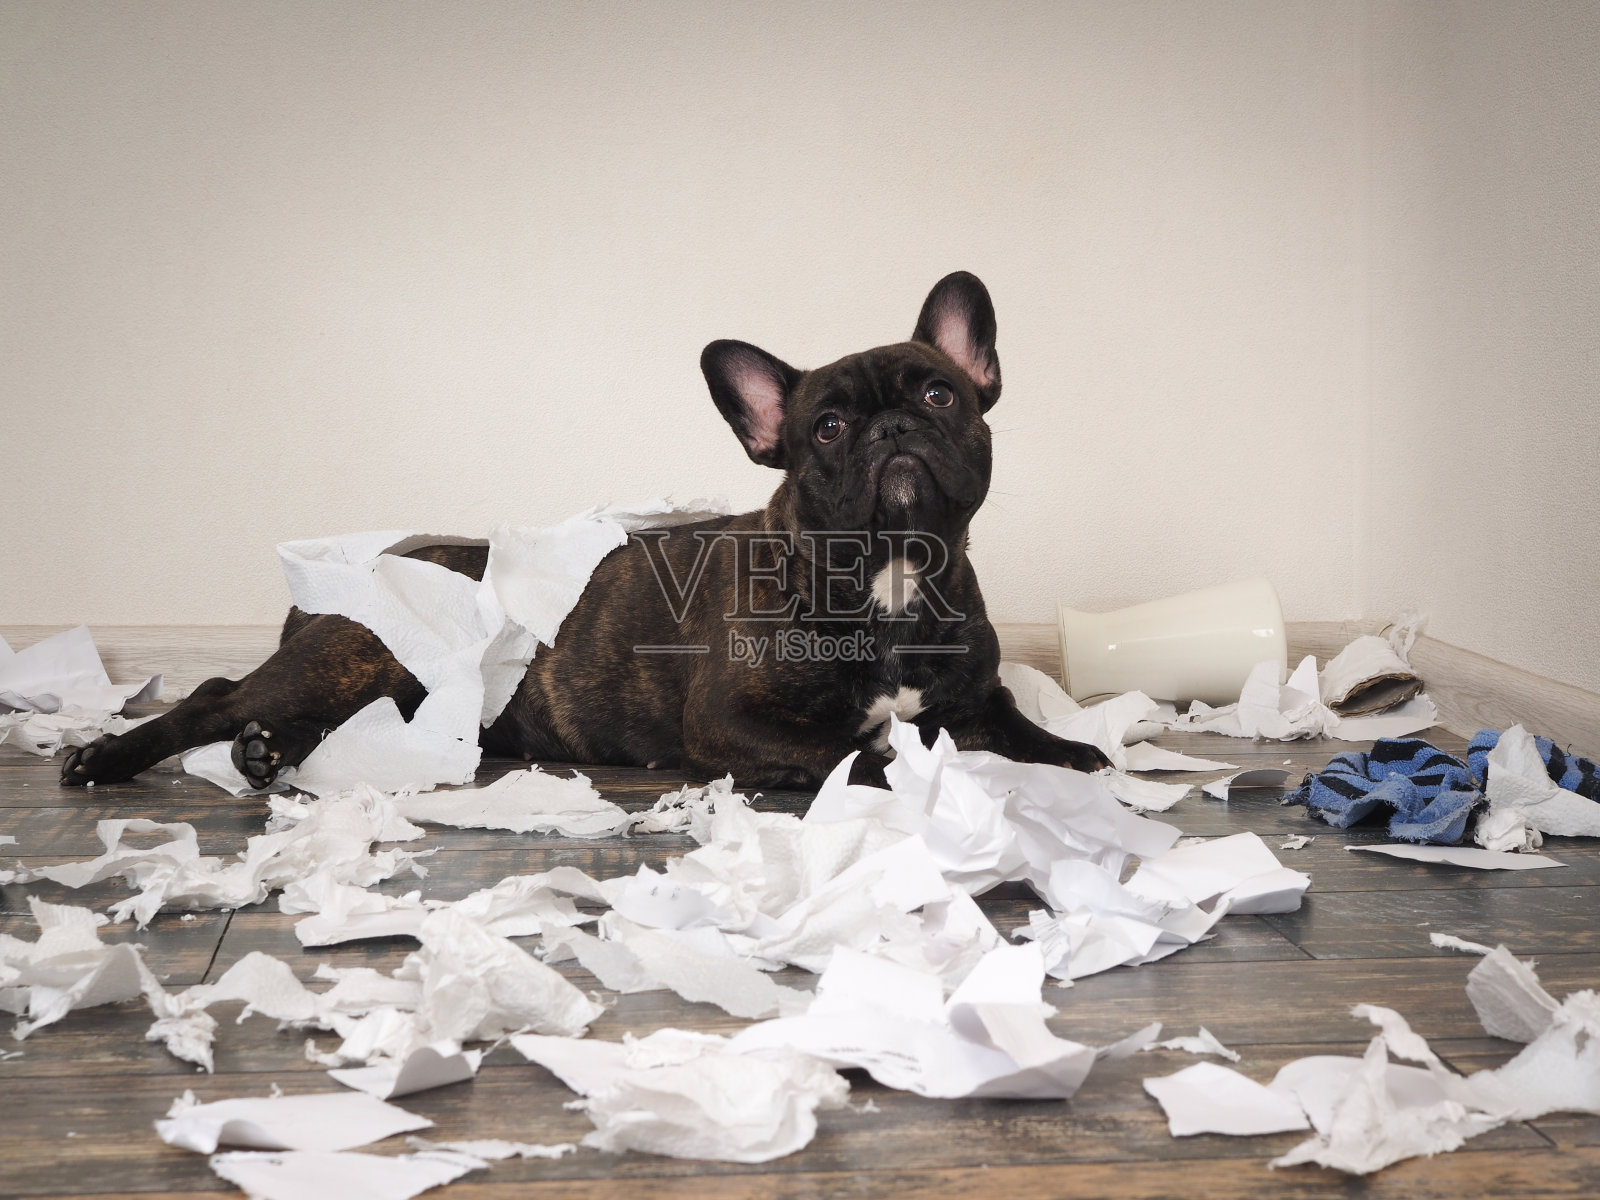 有趣的狗把房间弄得一团糟。顽皮的法国斗牛犬照片摄影图片